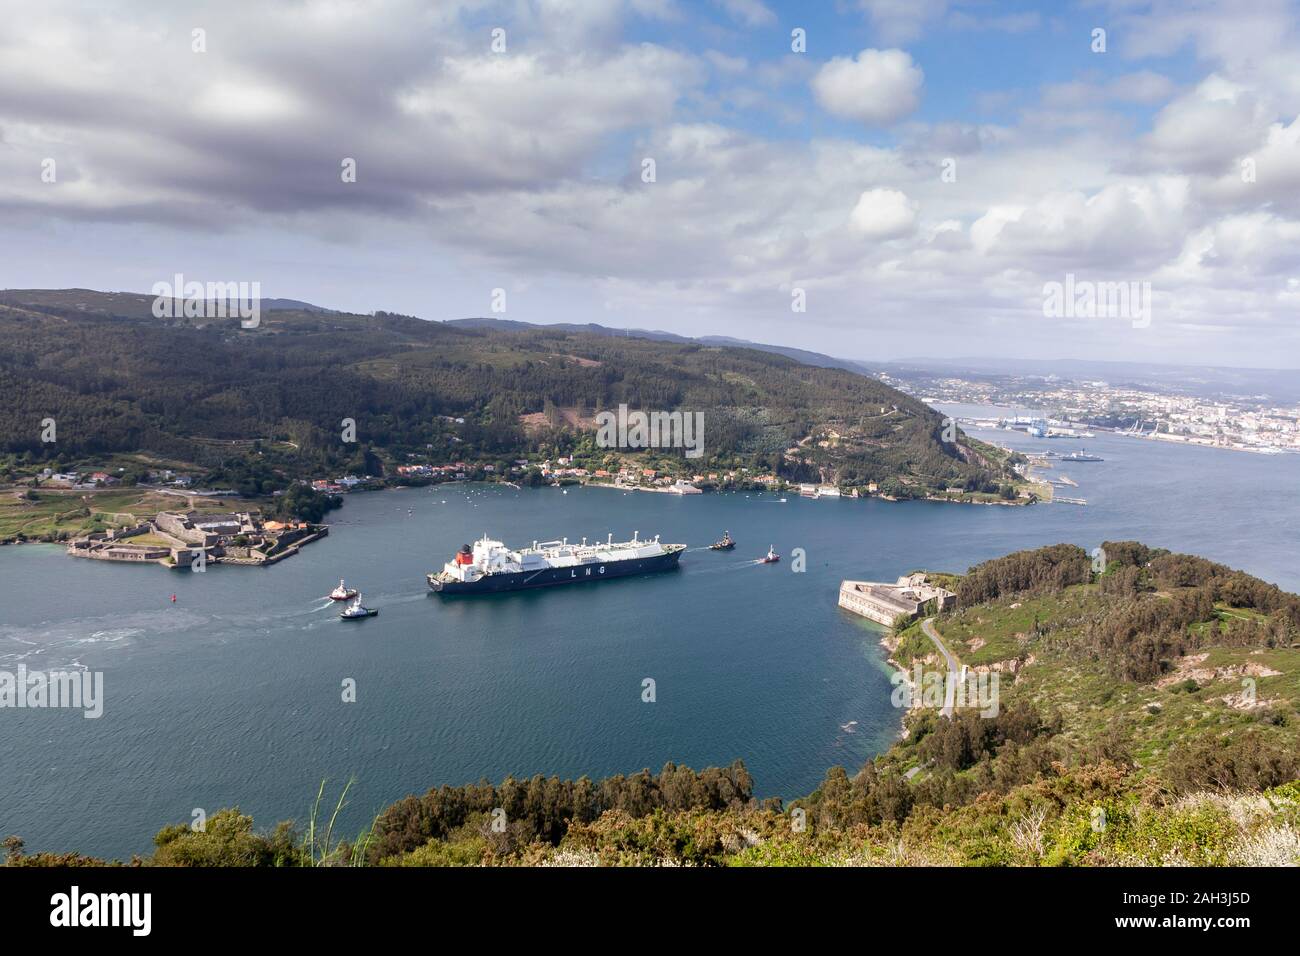 Ferrol, Spain - June 2011: Castillo de Villalba LNG Tanker sailing along the estuary of Ferrol Stock Photo